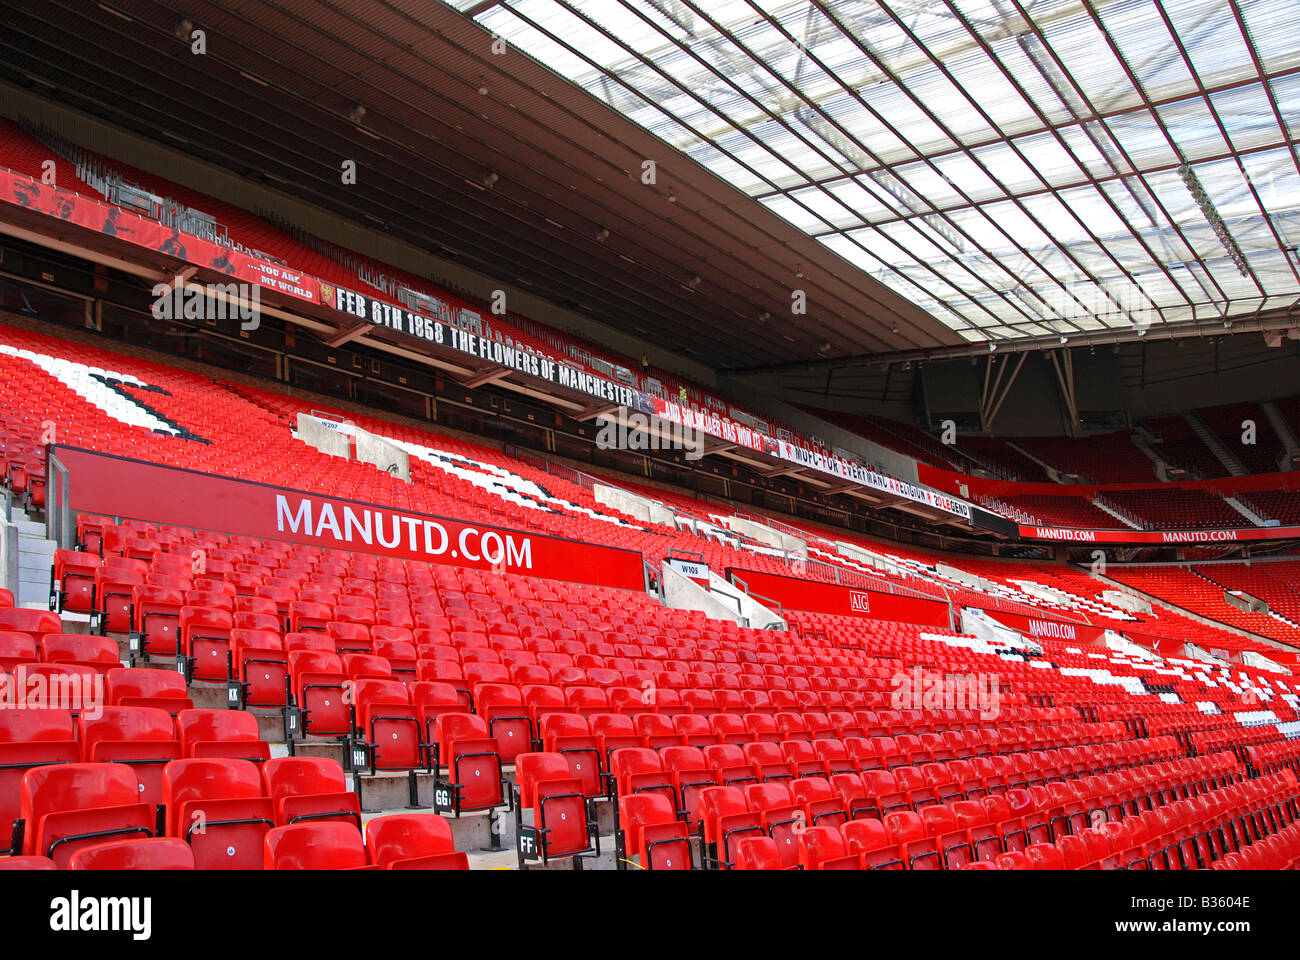 L'intérieur du stade vide à Old Trafford, domicile du Manchester United' 'mcélèbre club de football, Manchester, Angleterre, RU Banque D'Images